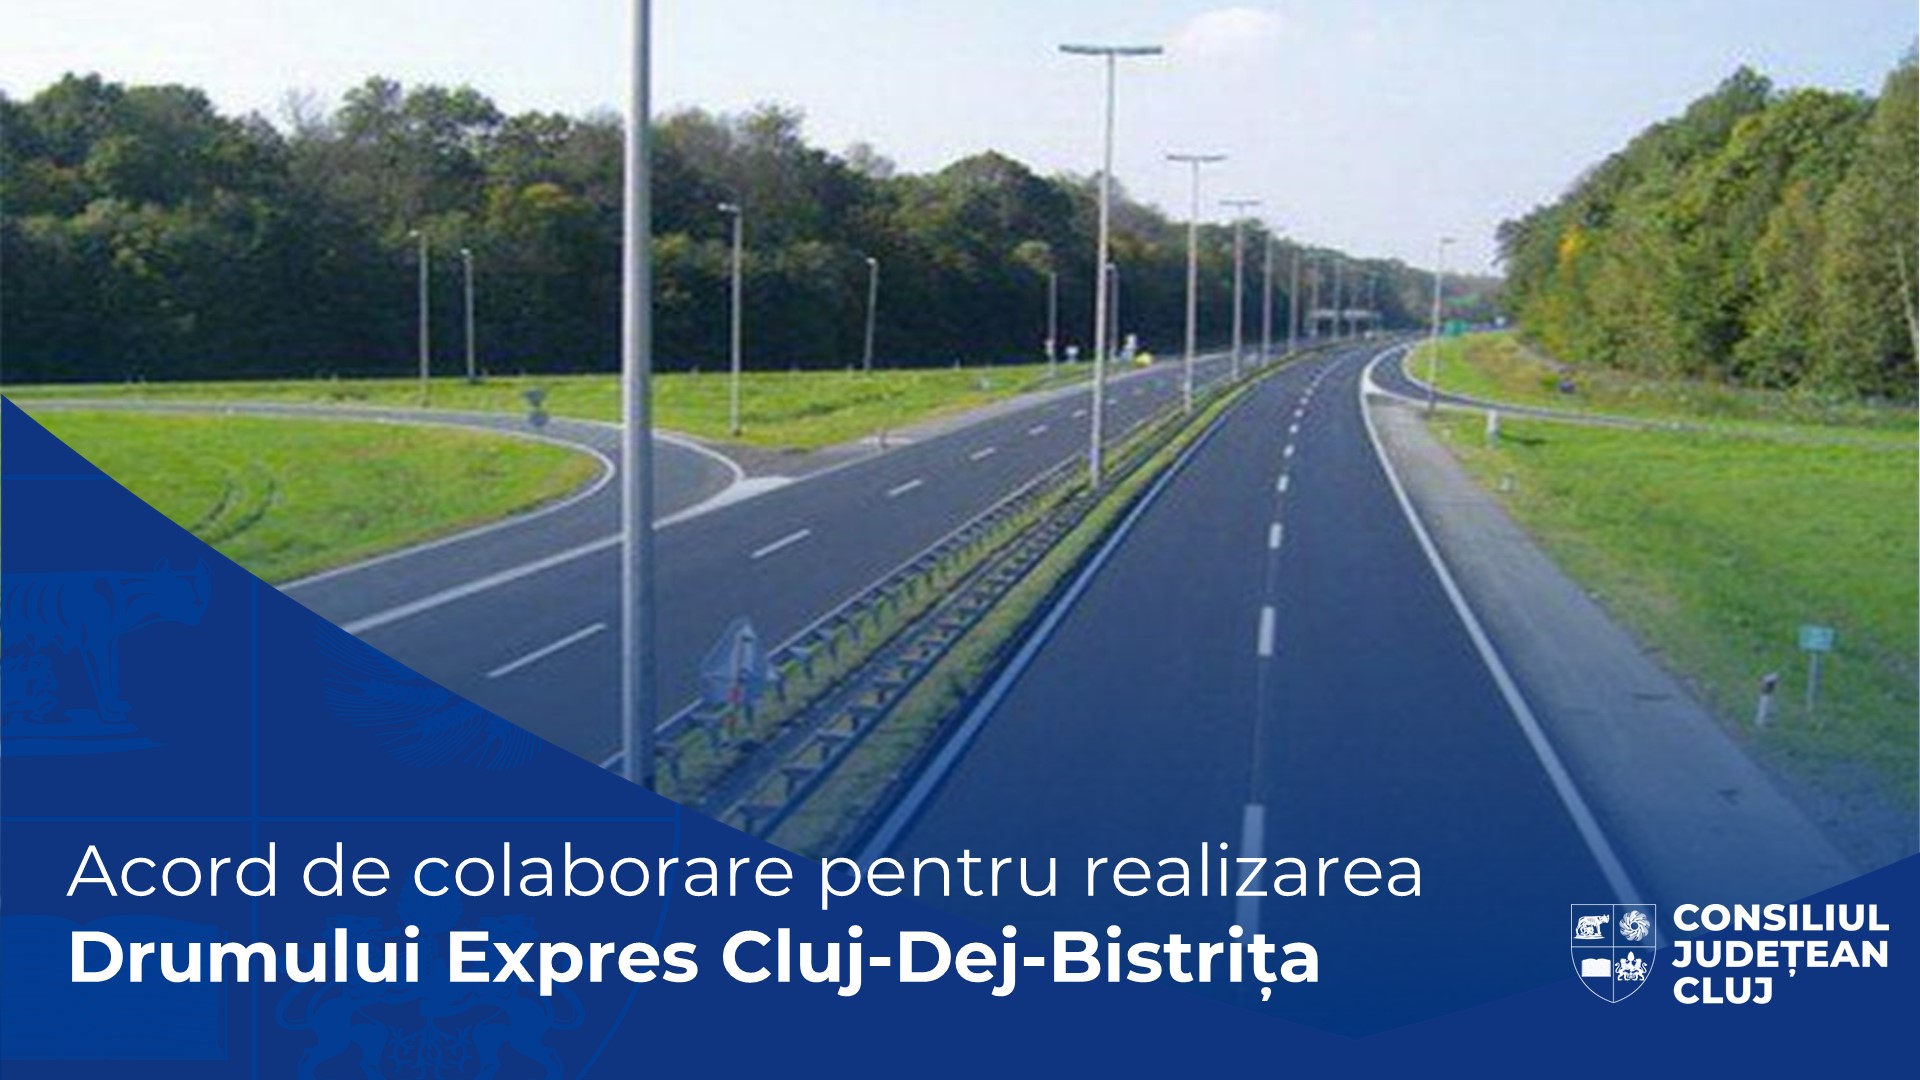 Drumul expres Cluj - Dej - Bistrița prinde contur! A fost semnat acordul de colaborare cu CJ Bistrița-Năsăud